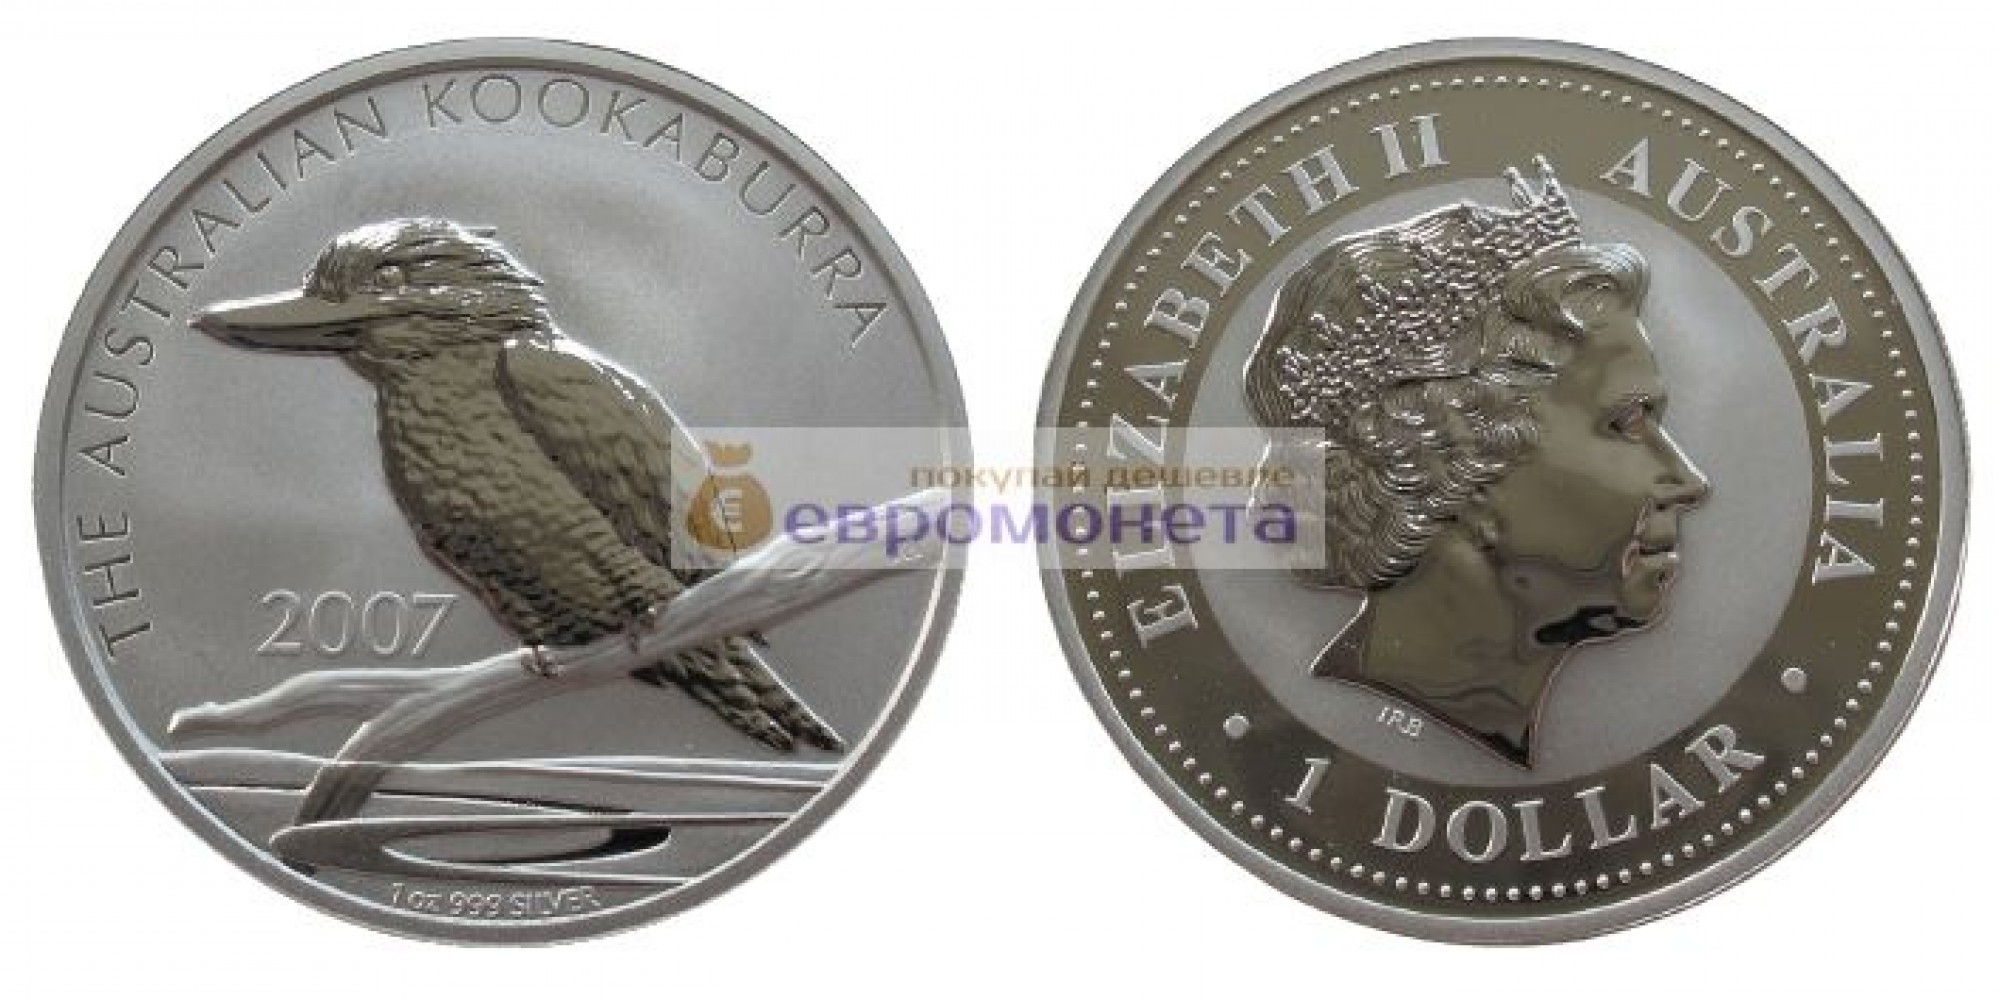 Австралия 1 доллар 2007 год Австралийская кукабарра kookaburra. Серебро. пруф / proof